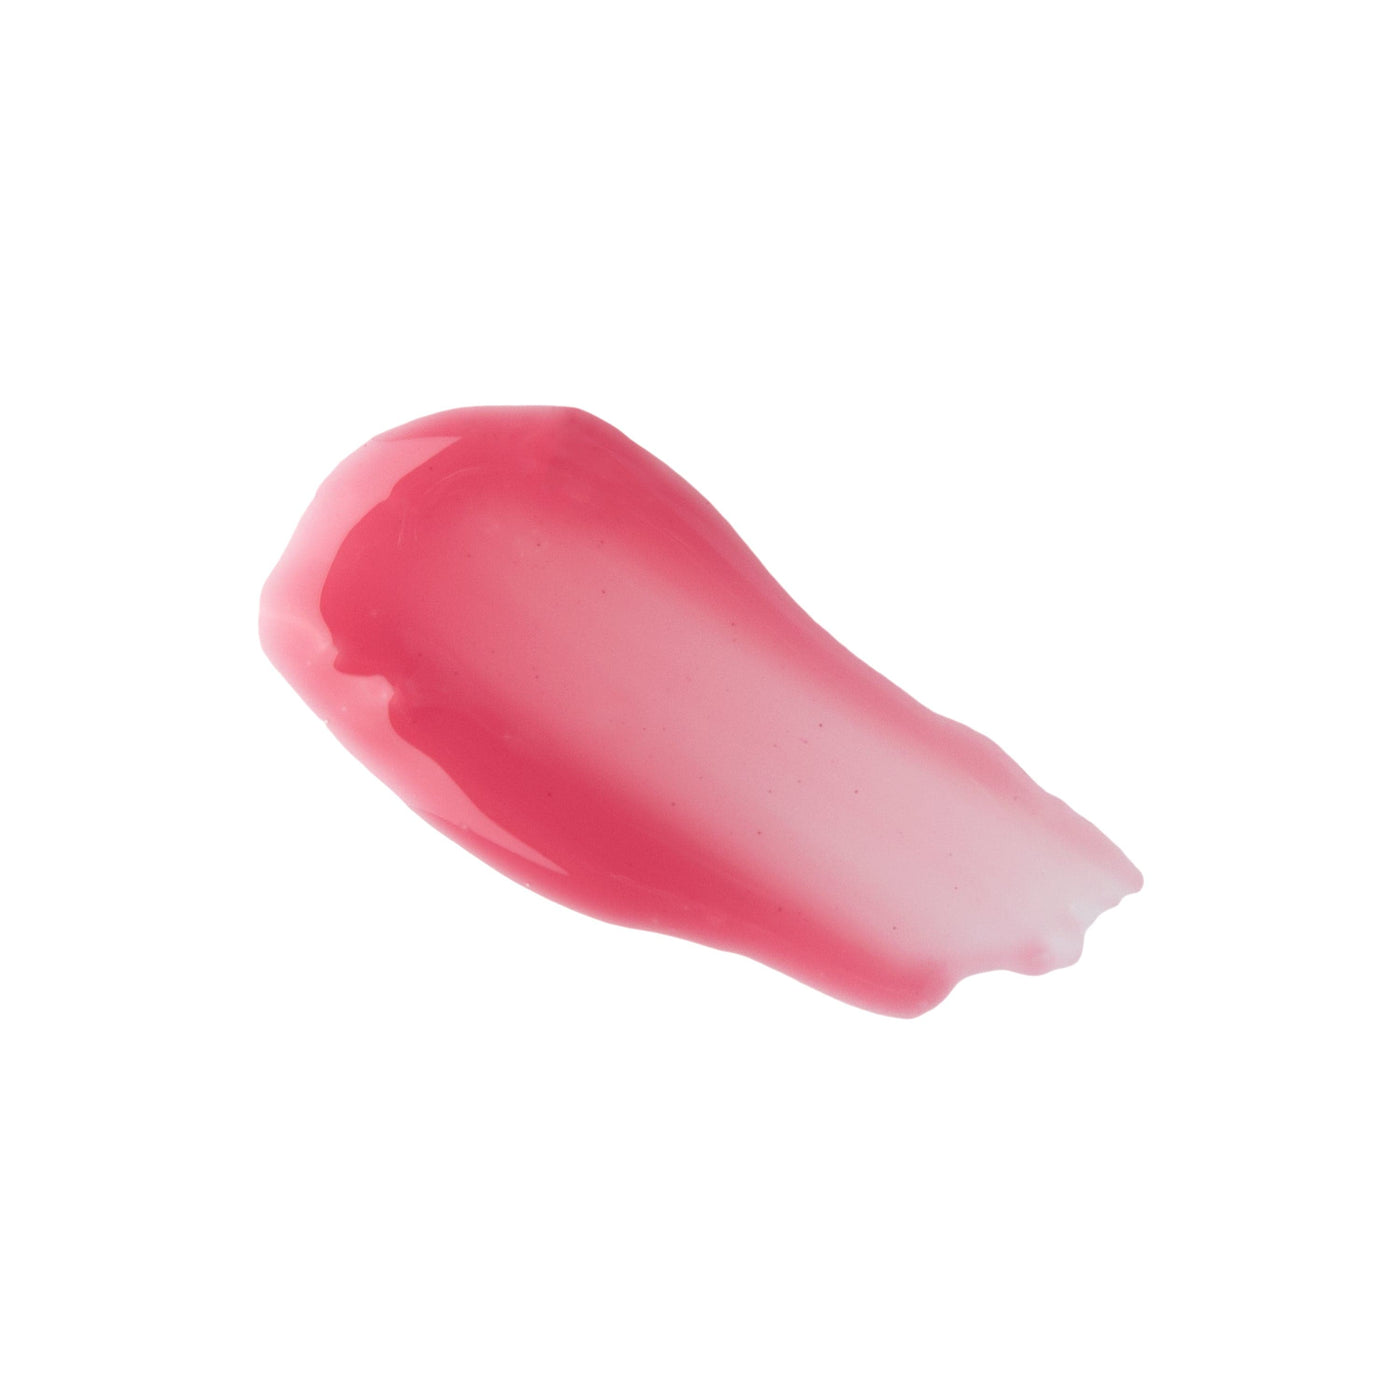 Soft Beauty Lip Gloss - Lip Gloss Bundle